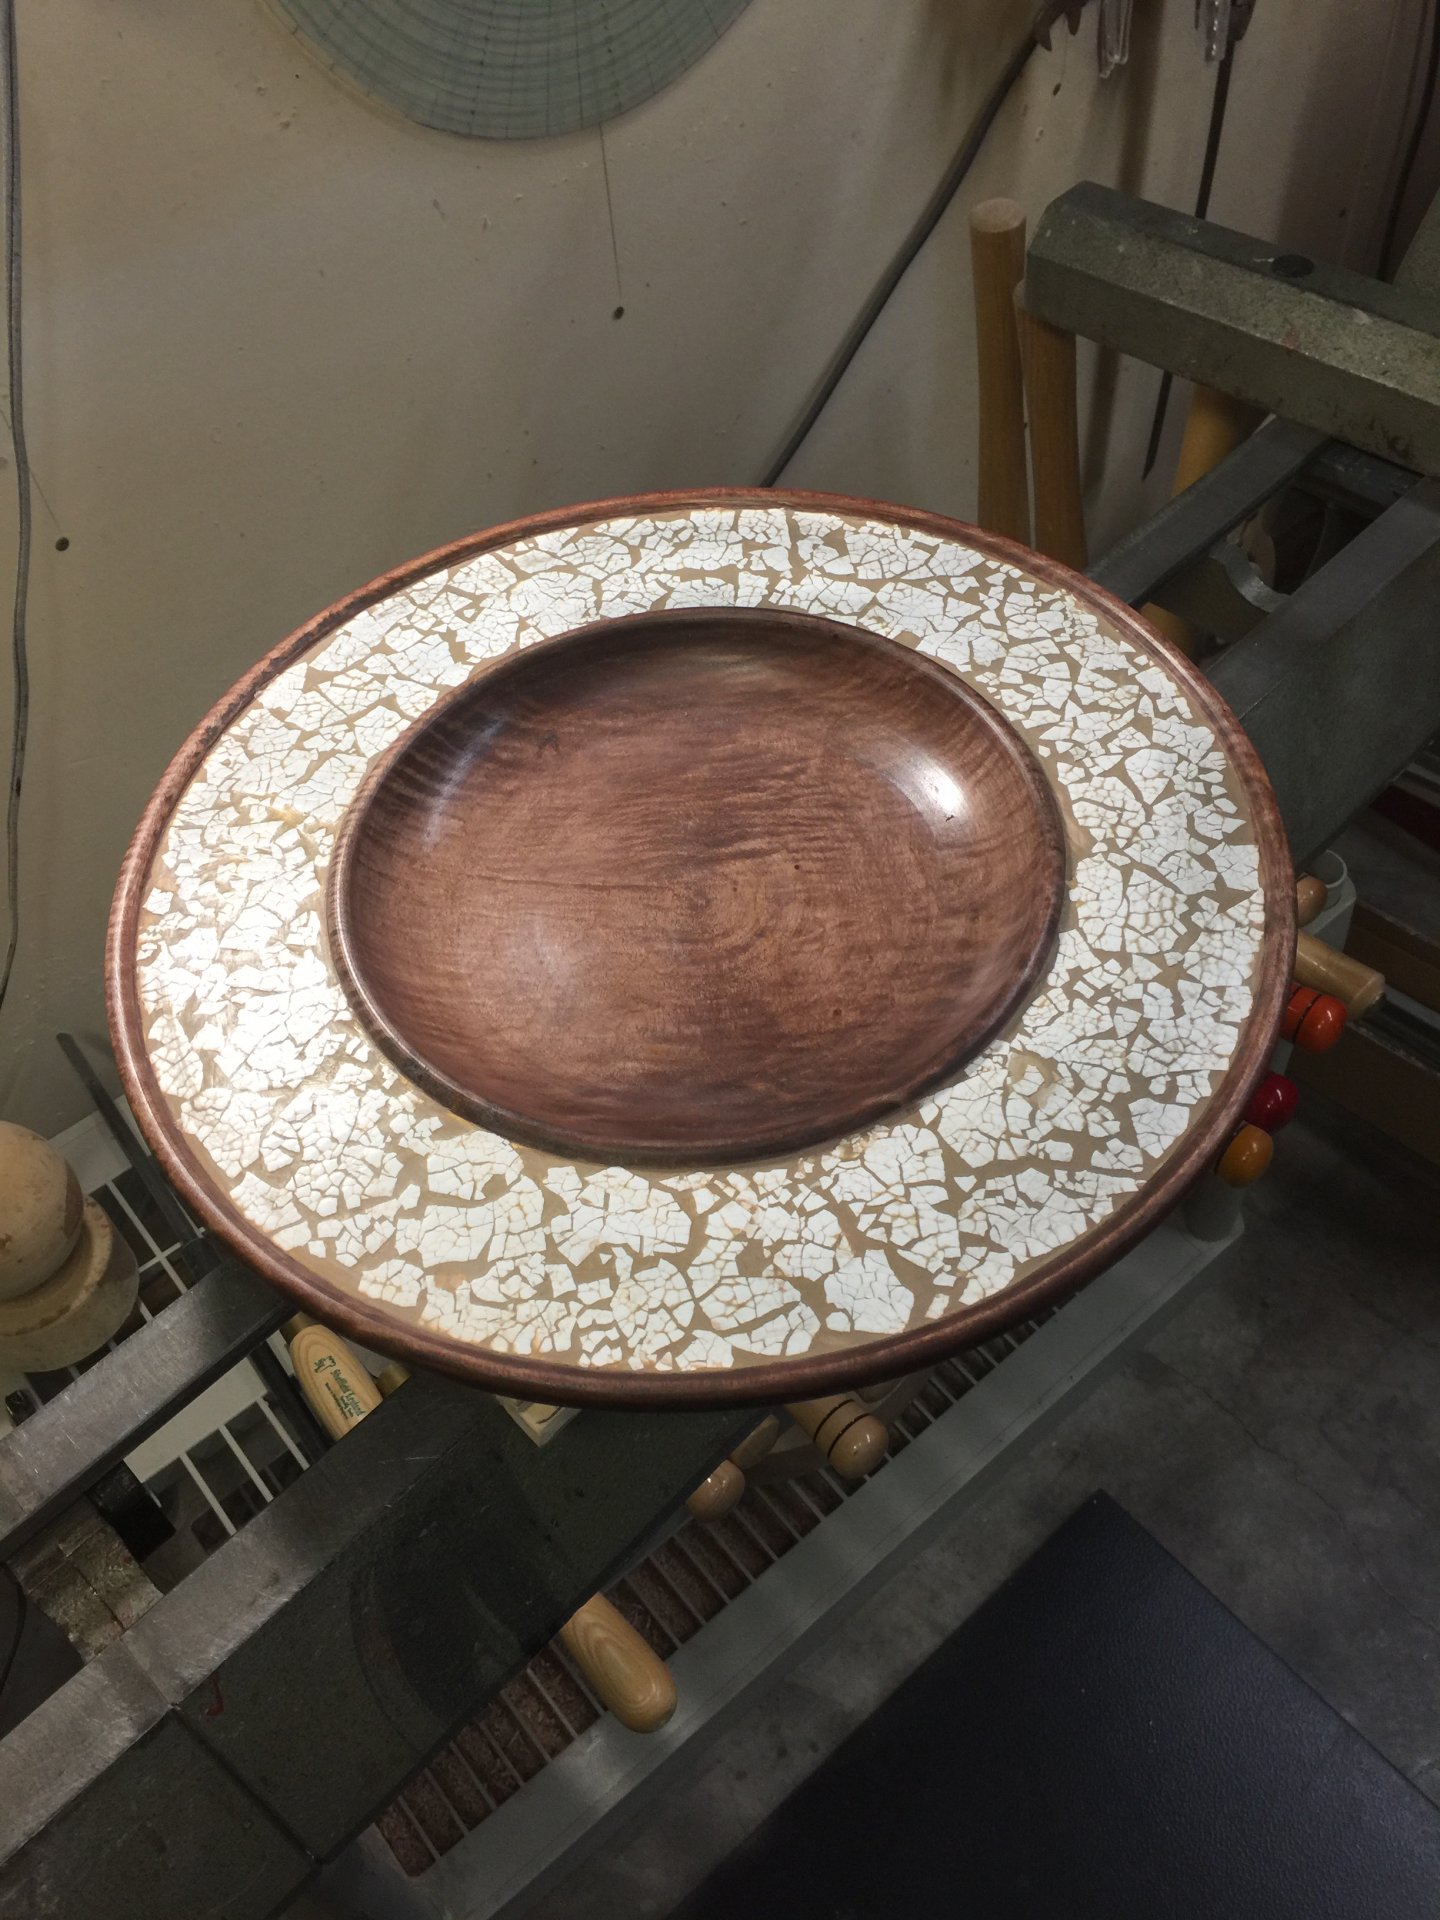 Maple Platter